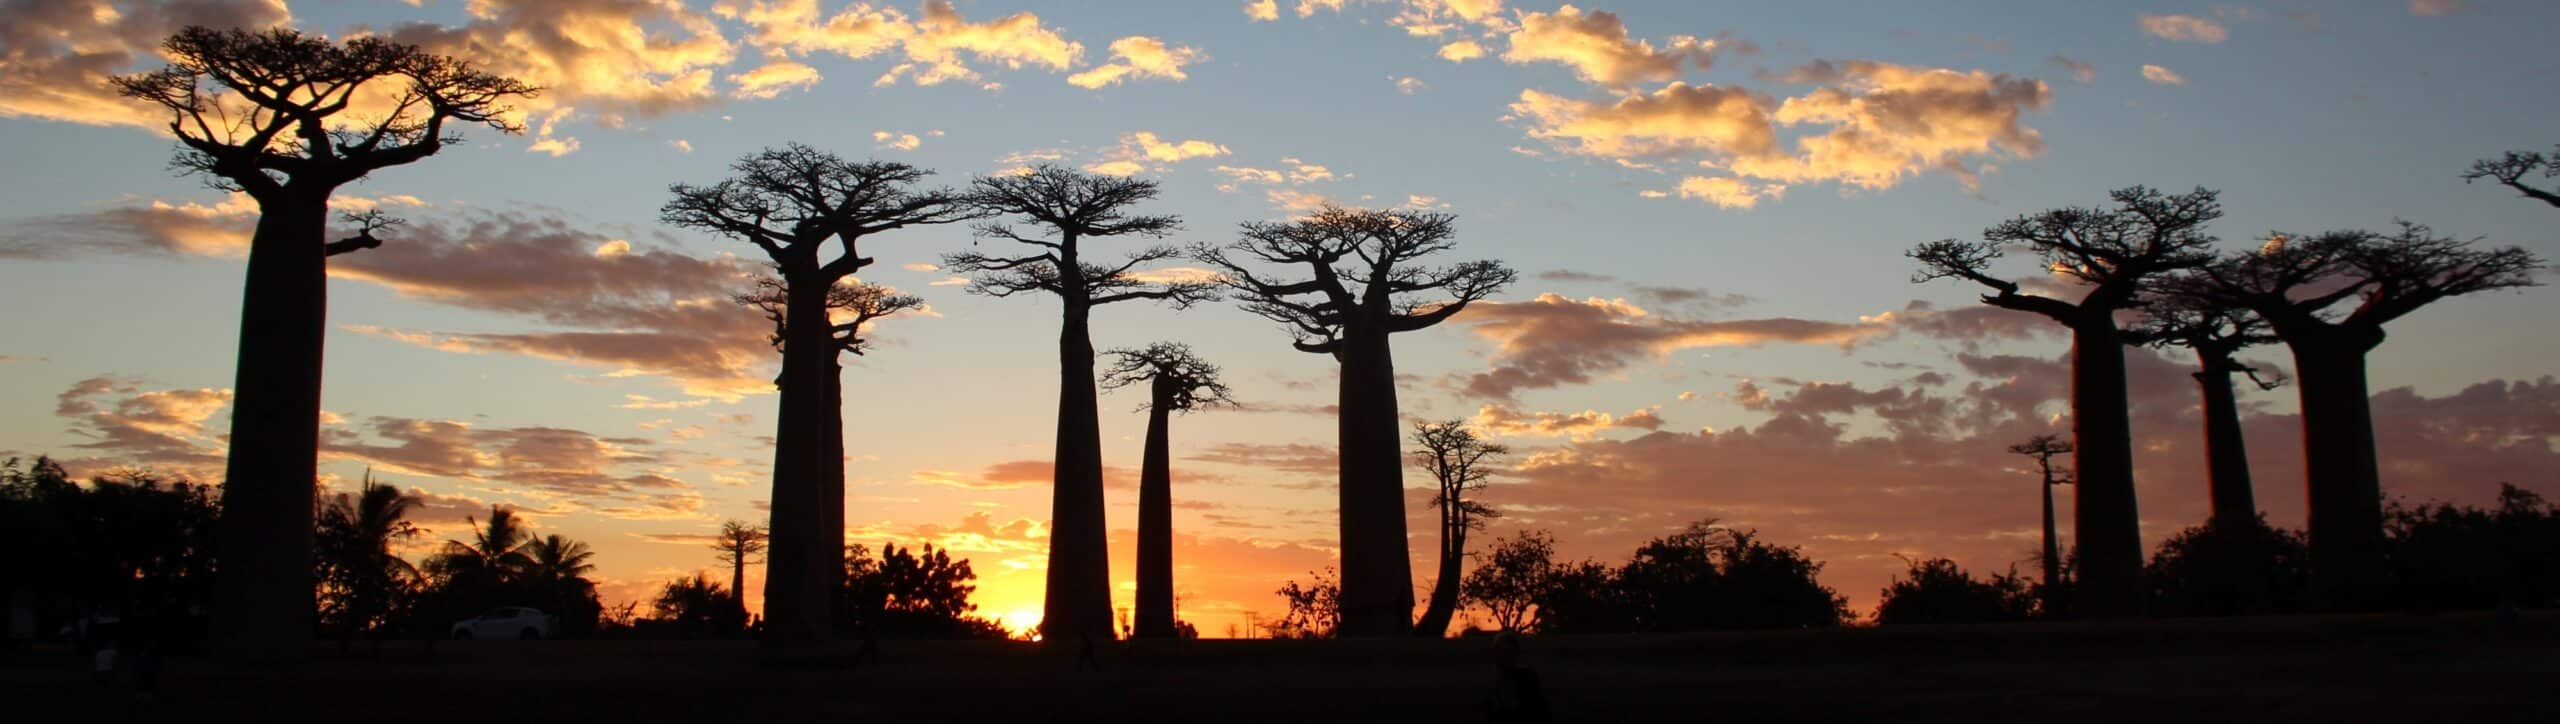 Voyage Madagascar Baobabs Morondave scaled